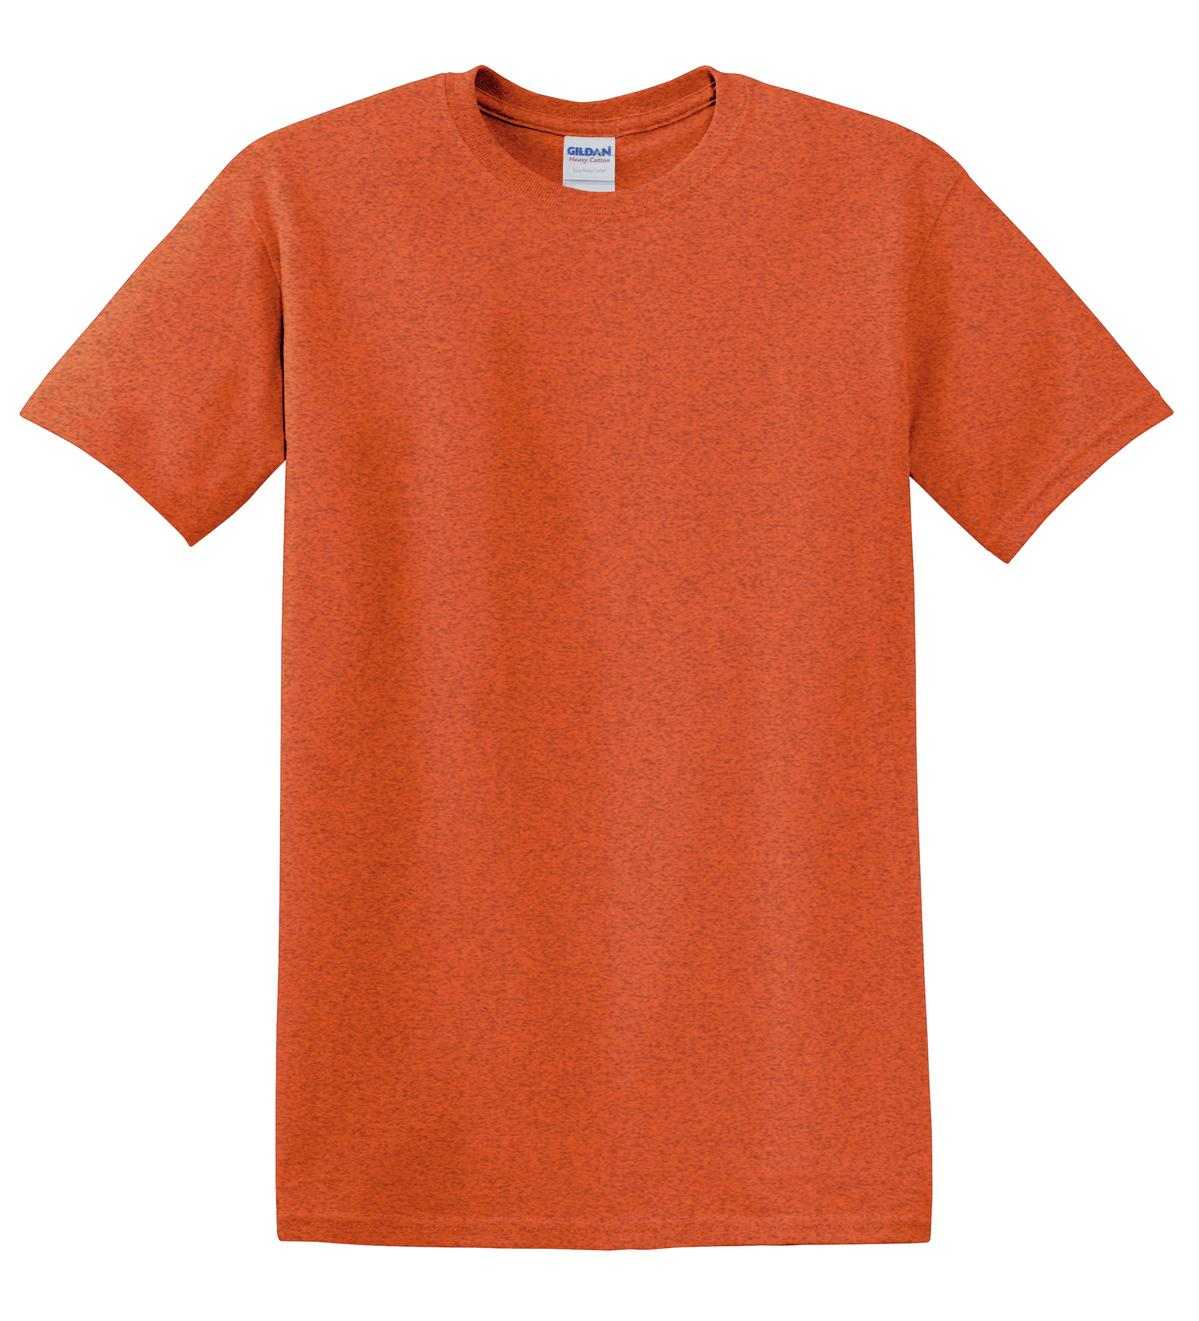 Gildan 5000 Heavy Cotton 100% Cotton T-Shirt - Antique Orange - HIT a Double